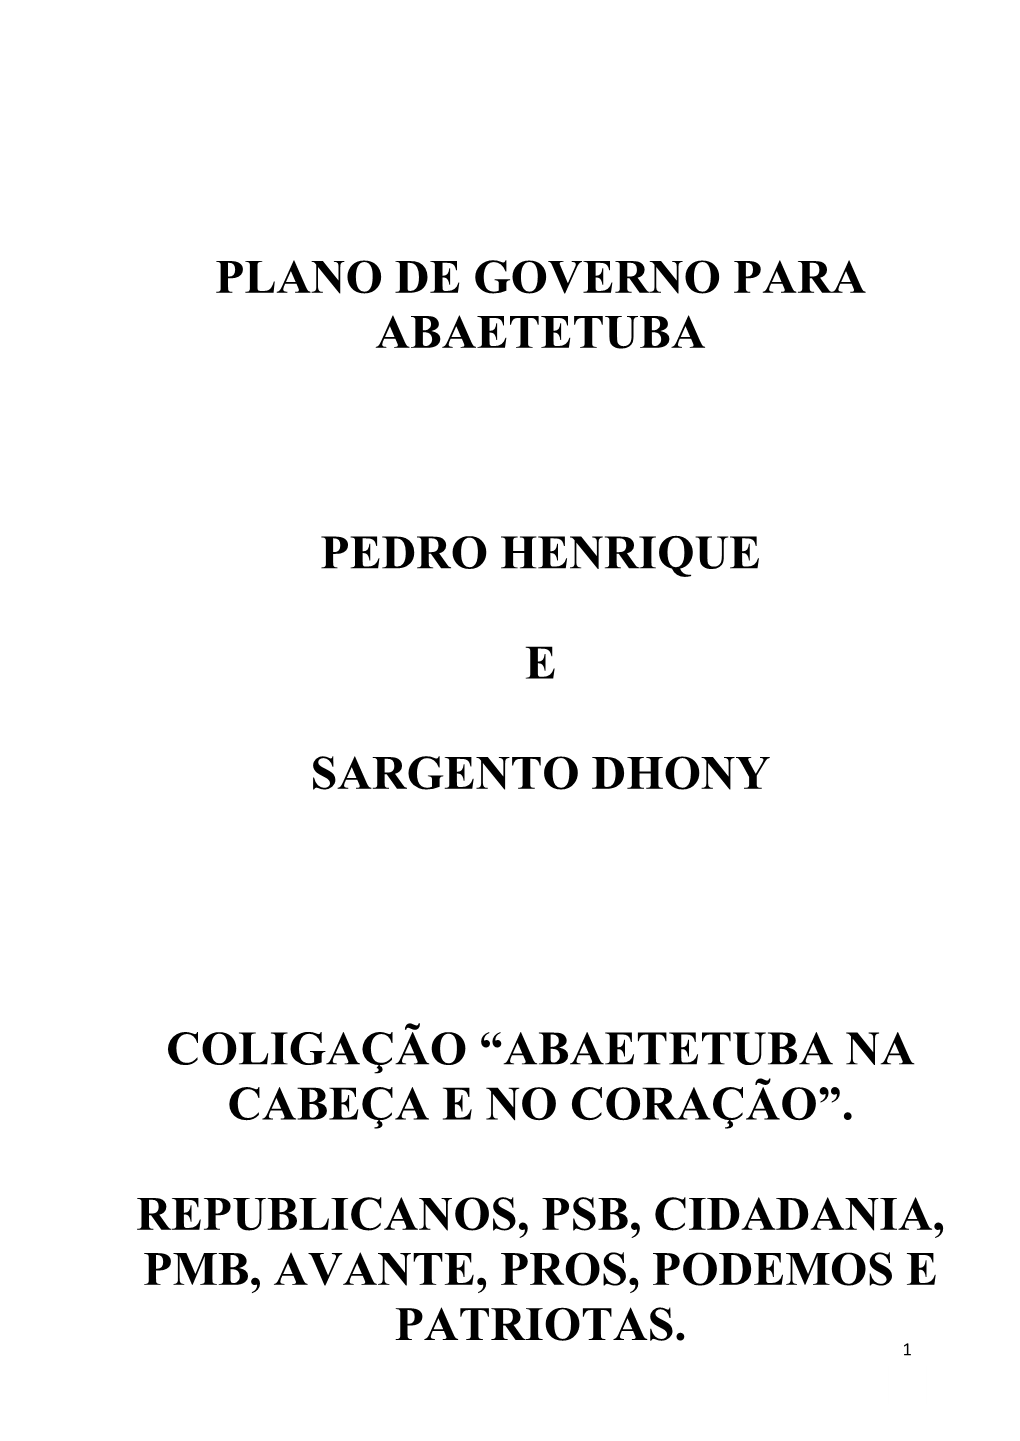 Plano De Governo Para Abaetetuba Pedro Henrique E Sargento Dhony Coligação “Abaetetuba Na Cabeça E No Coração”. Republi